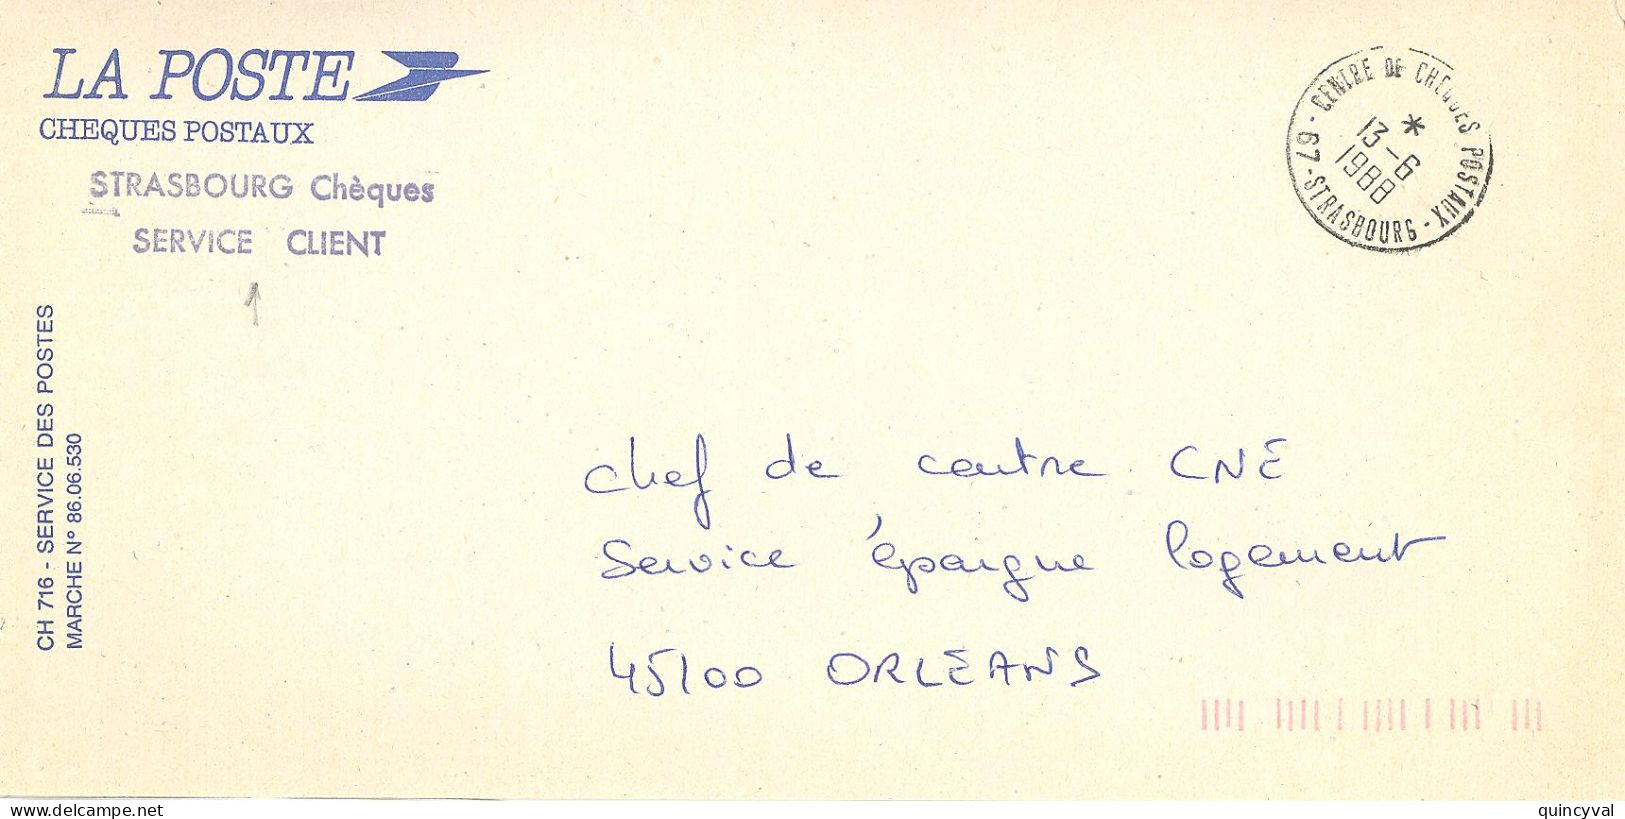 CENTRE DE CHEQUES POSATAUX 67 STRASBOURG  Ob 13 6 1988  Lettre Enveloppe CCP Cheques Postaux - Manual Postmarks